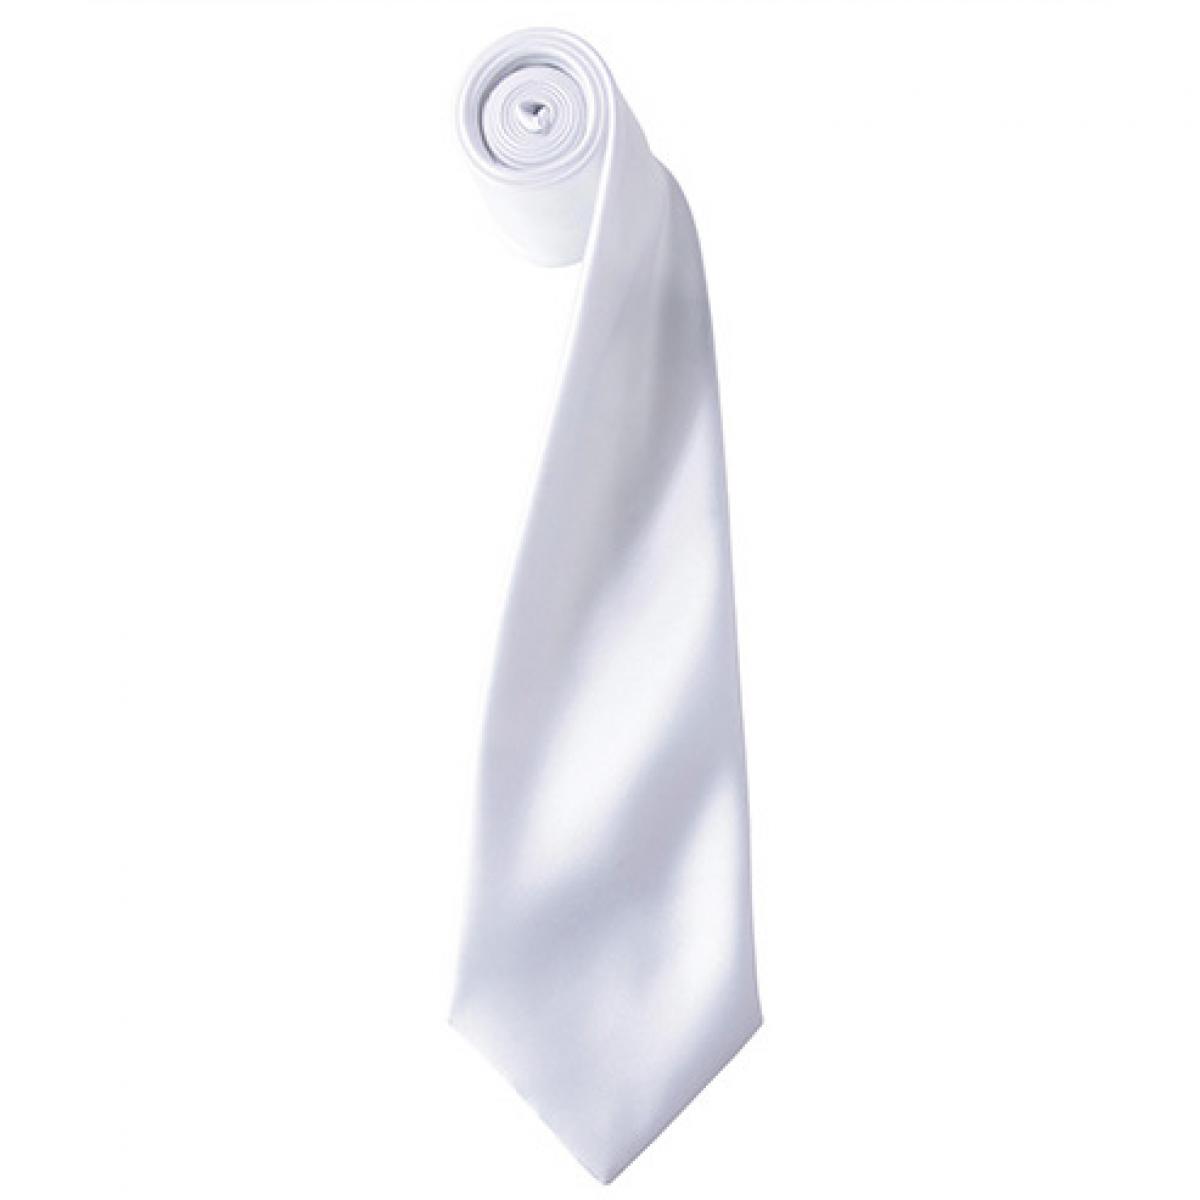 Hersteller: Premier Workwear Herstellernummer: PR750 Artikelbezeichnung: Satin Tie ´Colours´ / 144 x 8,5 cm Farbe: White